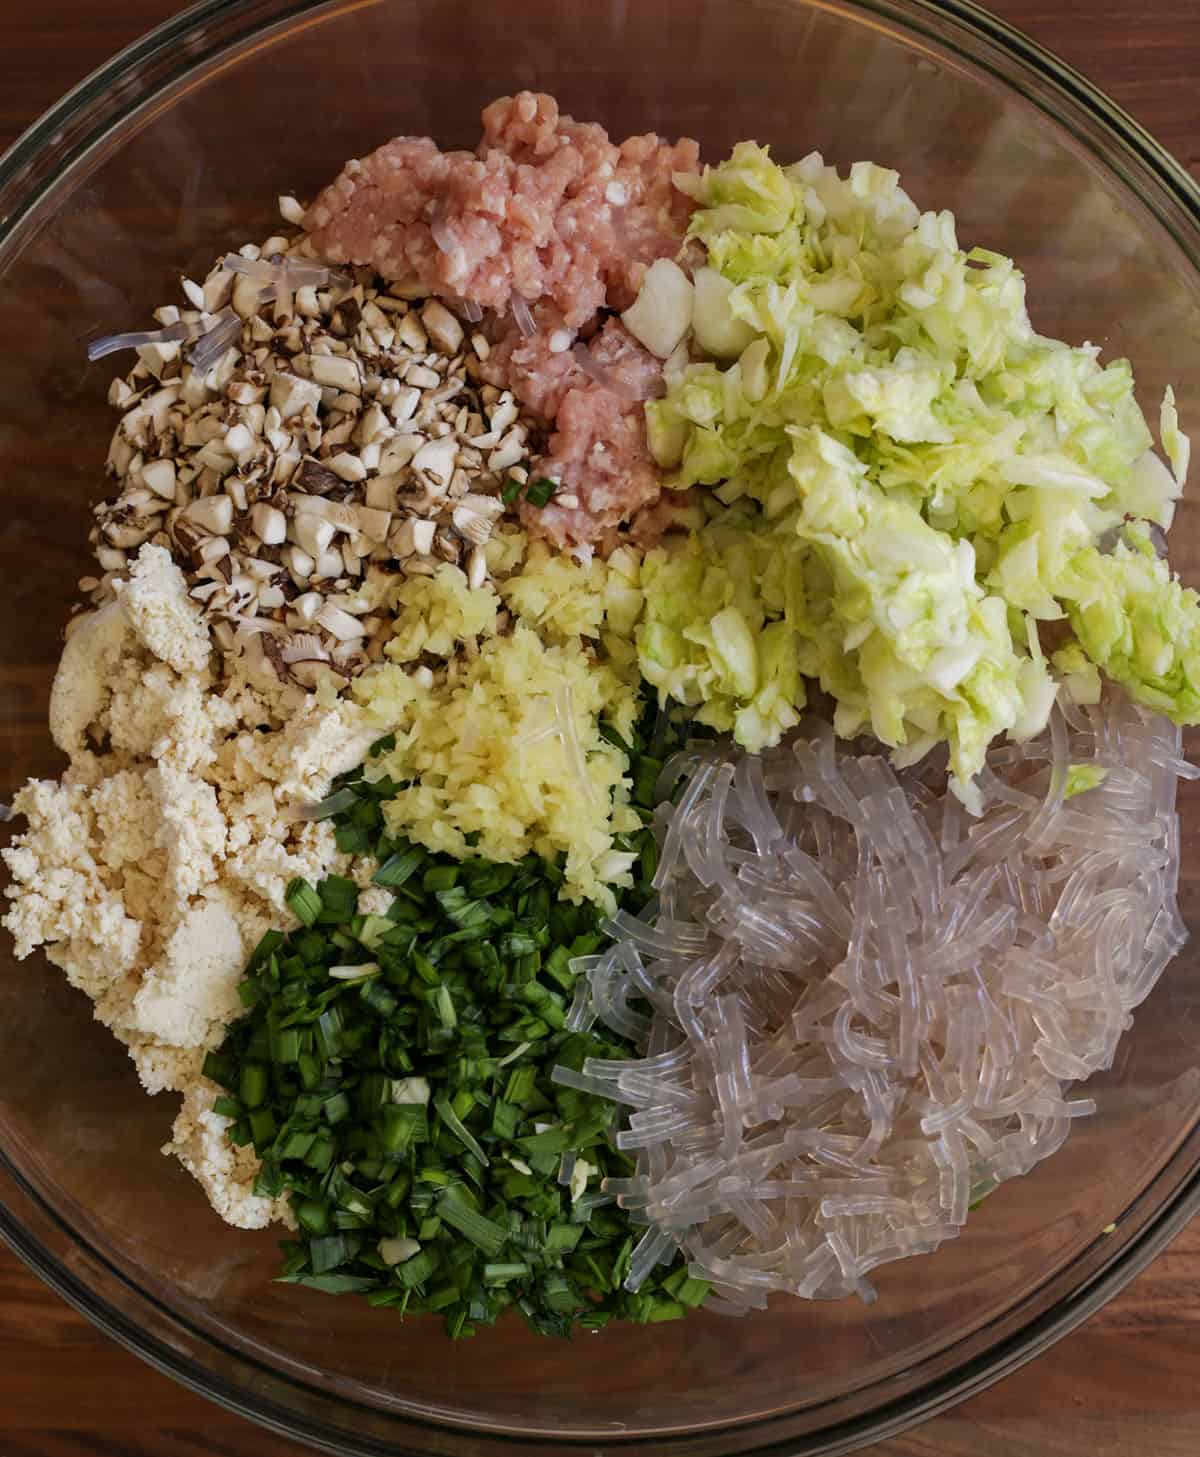 Ingredients for Korean dumplings in a bowl.